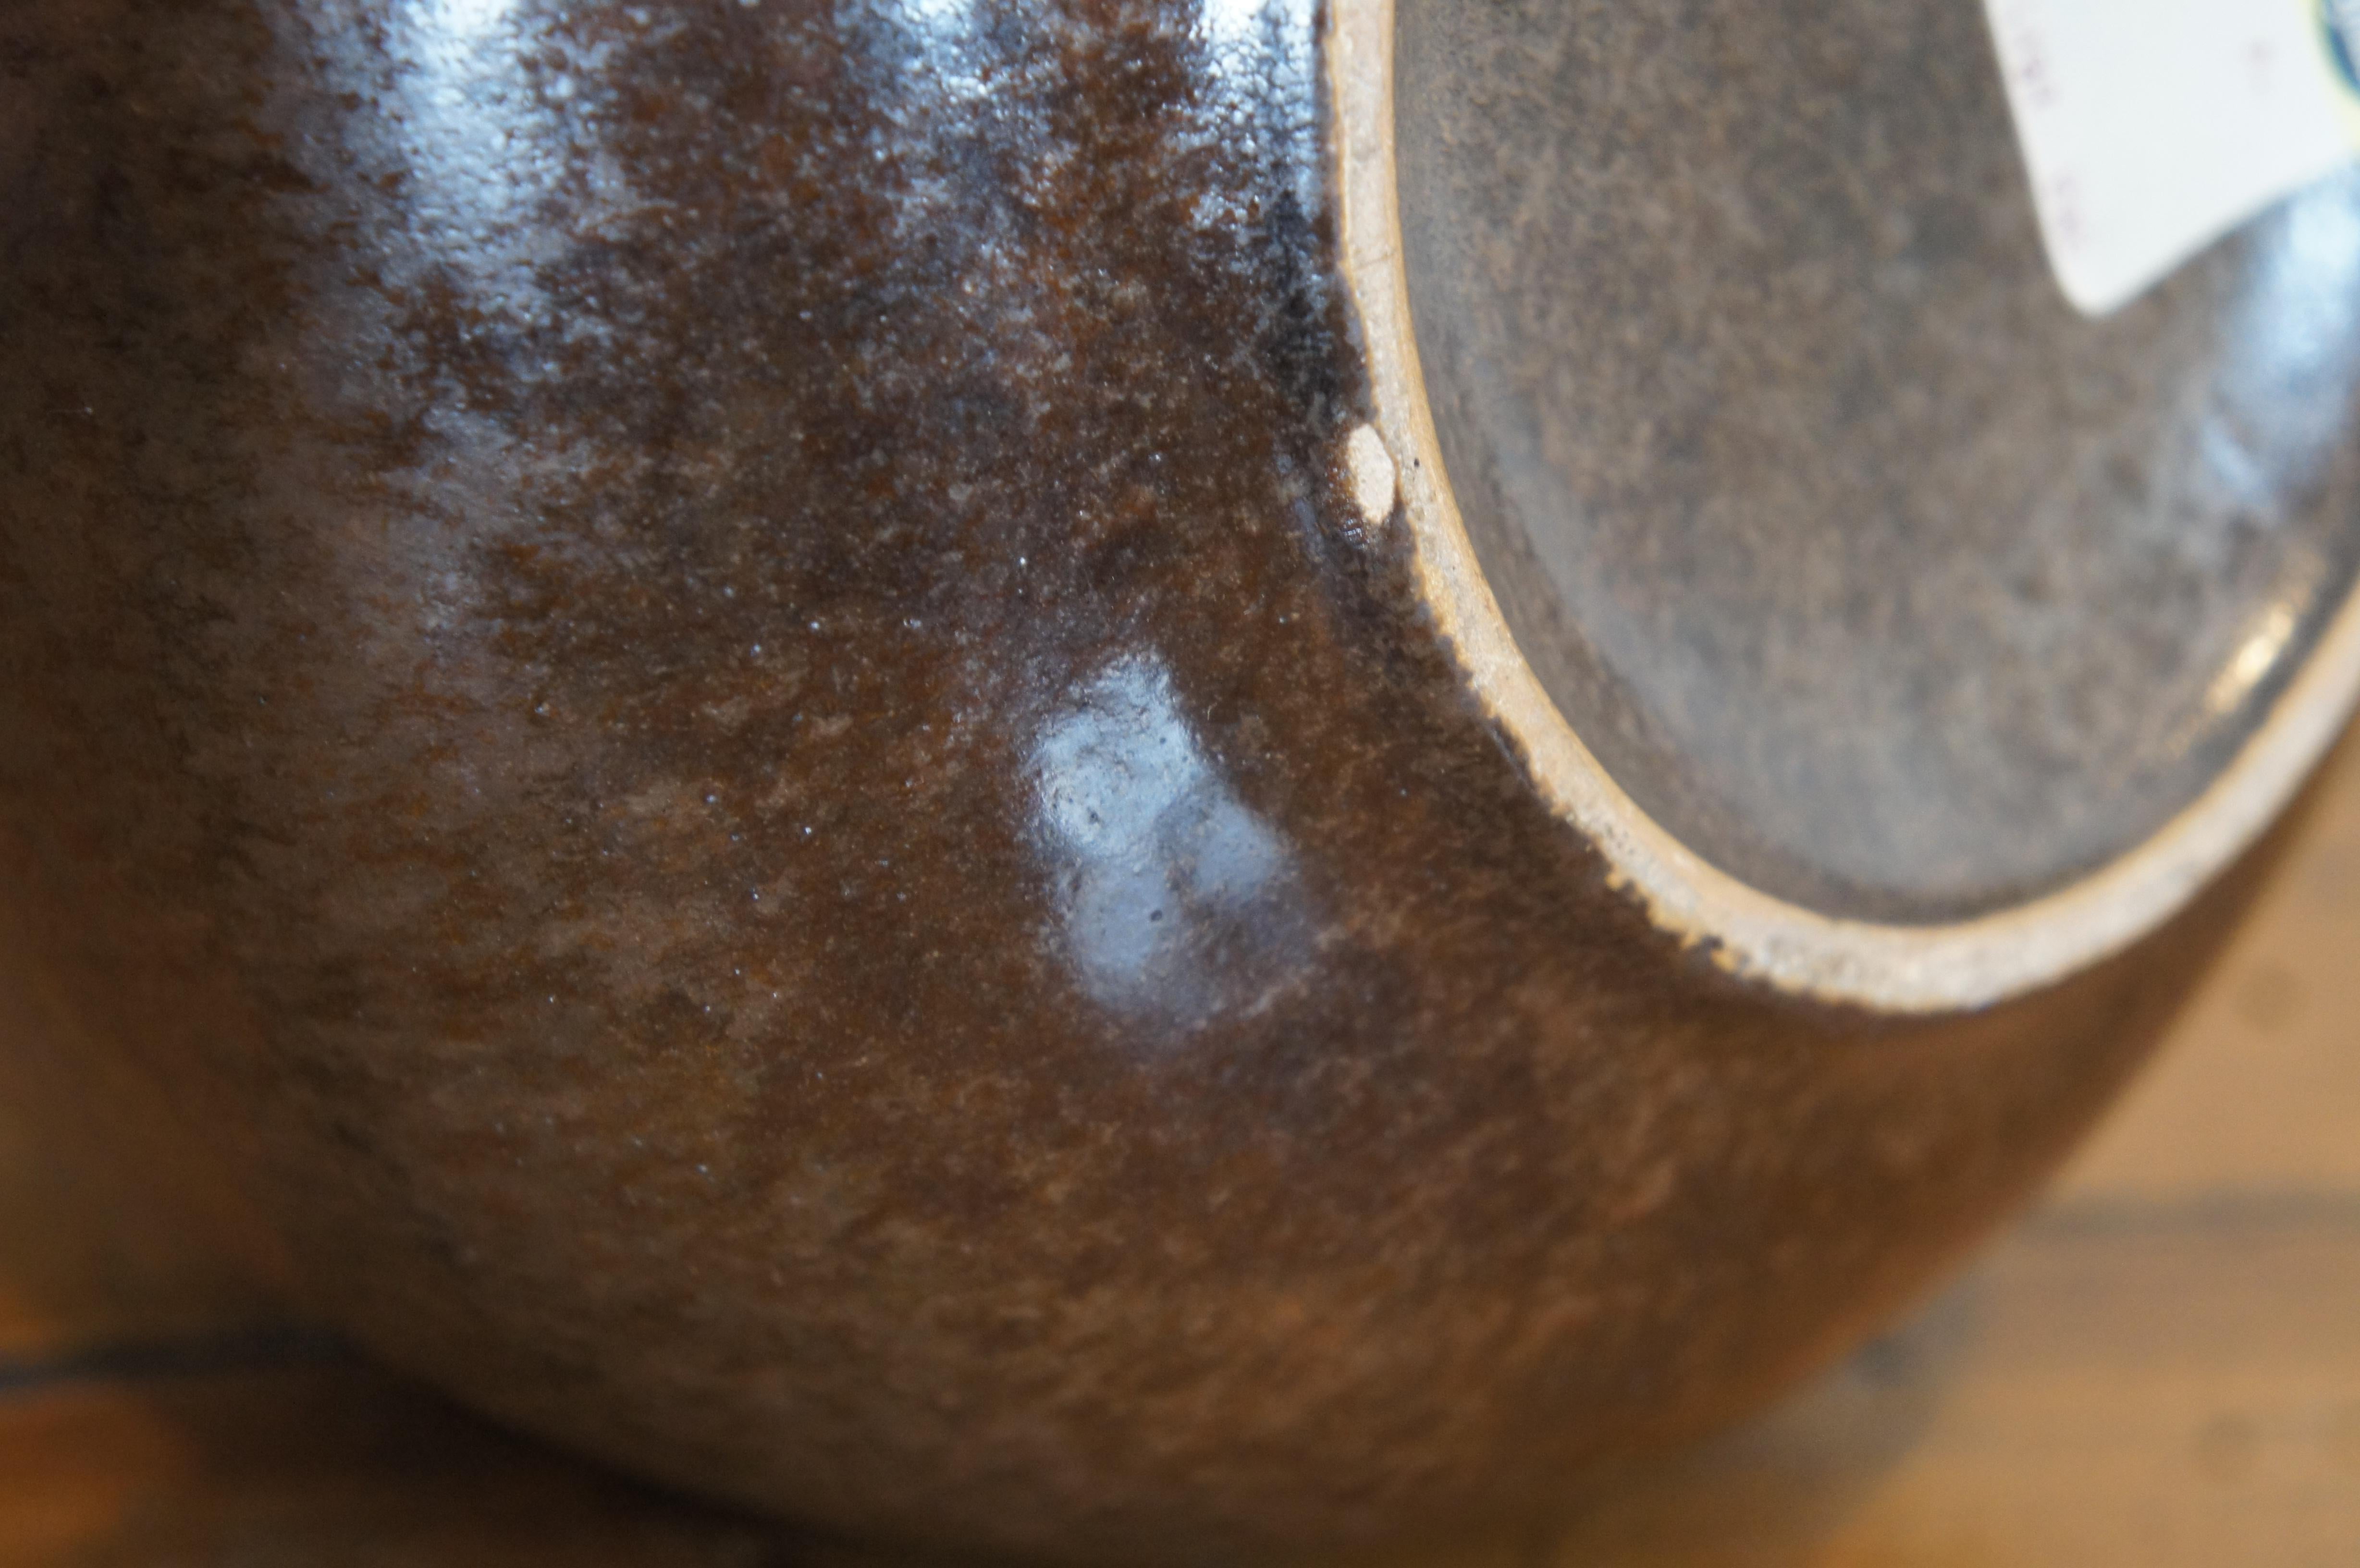 Midcentury Alvino Bagni for Raymor Modern Two Tone Bud Vase Pottery Vessel 1